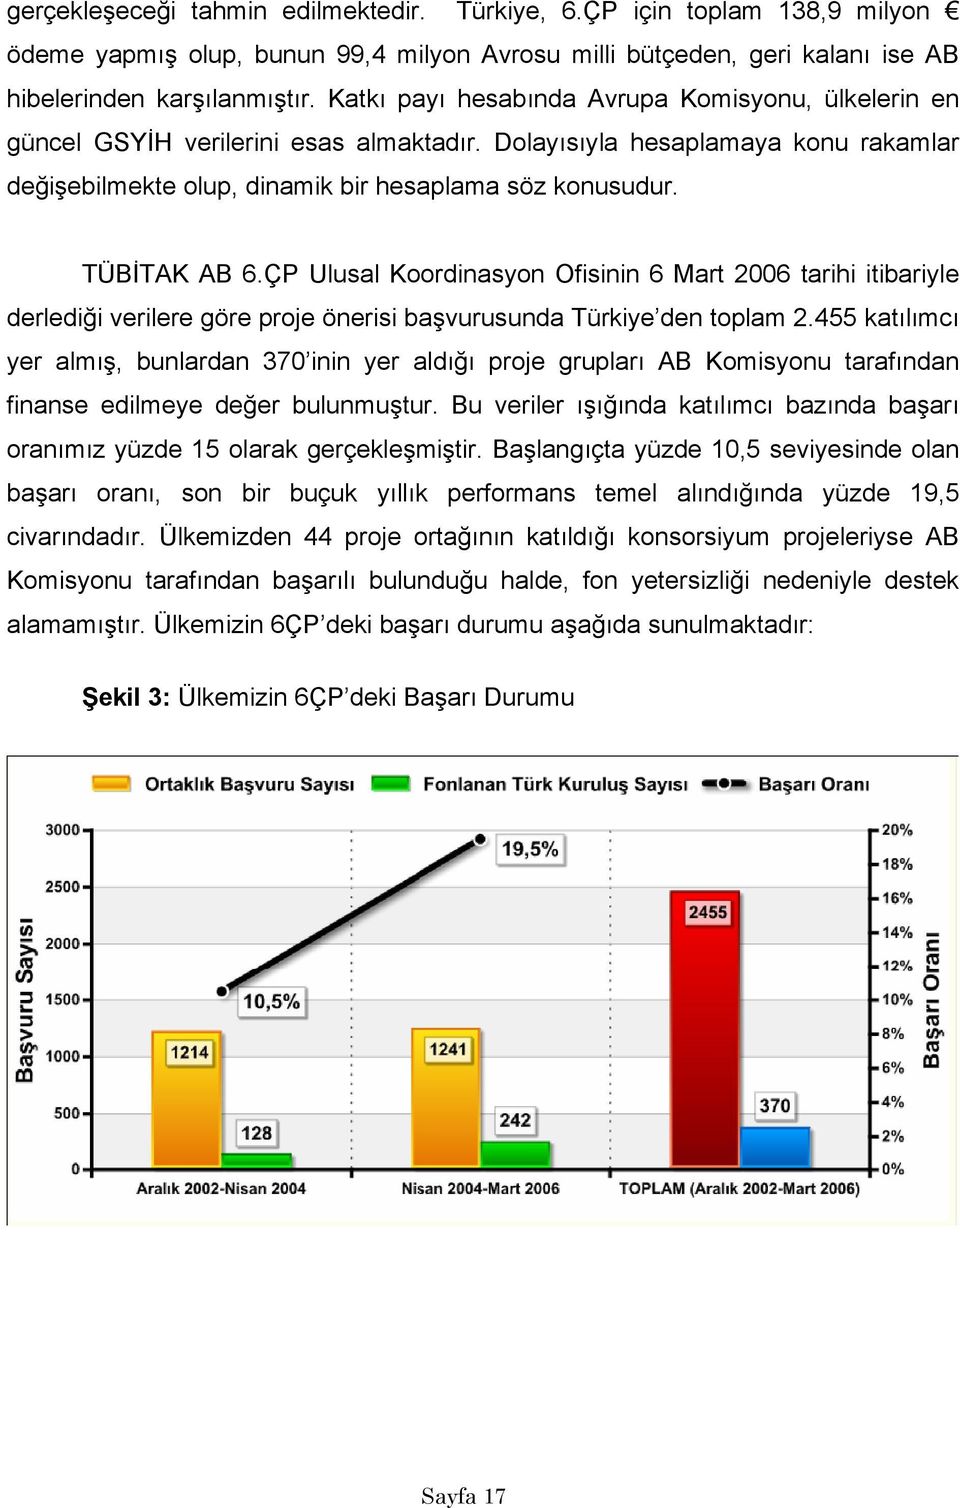 TÜBİTAK AB 6.ÇP Ulusal Koordinasyon Ofisinin 6 Mart 2006 tarihi itibariyle derlediği verilere göre proje önerisi başvurusunda Türkiye den toplam 2.